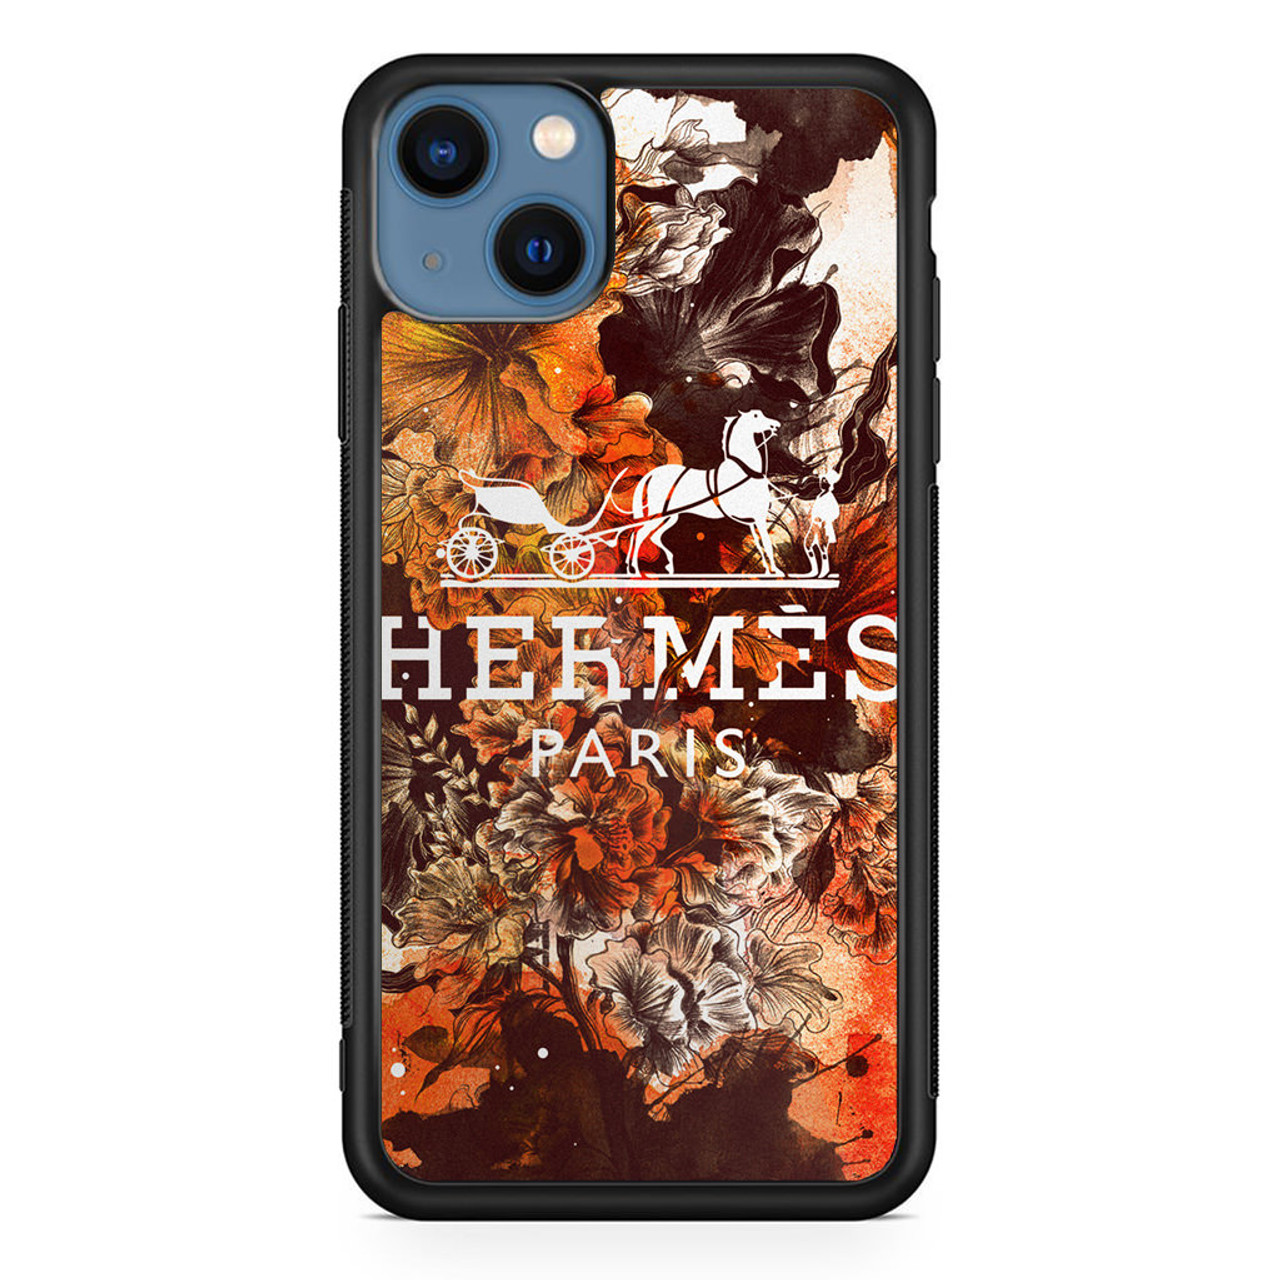 Hermes Paris iPhone 11 Pro Max Case - CASESHUNTER